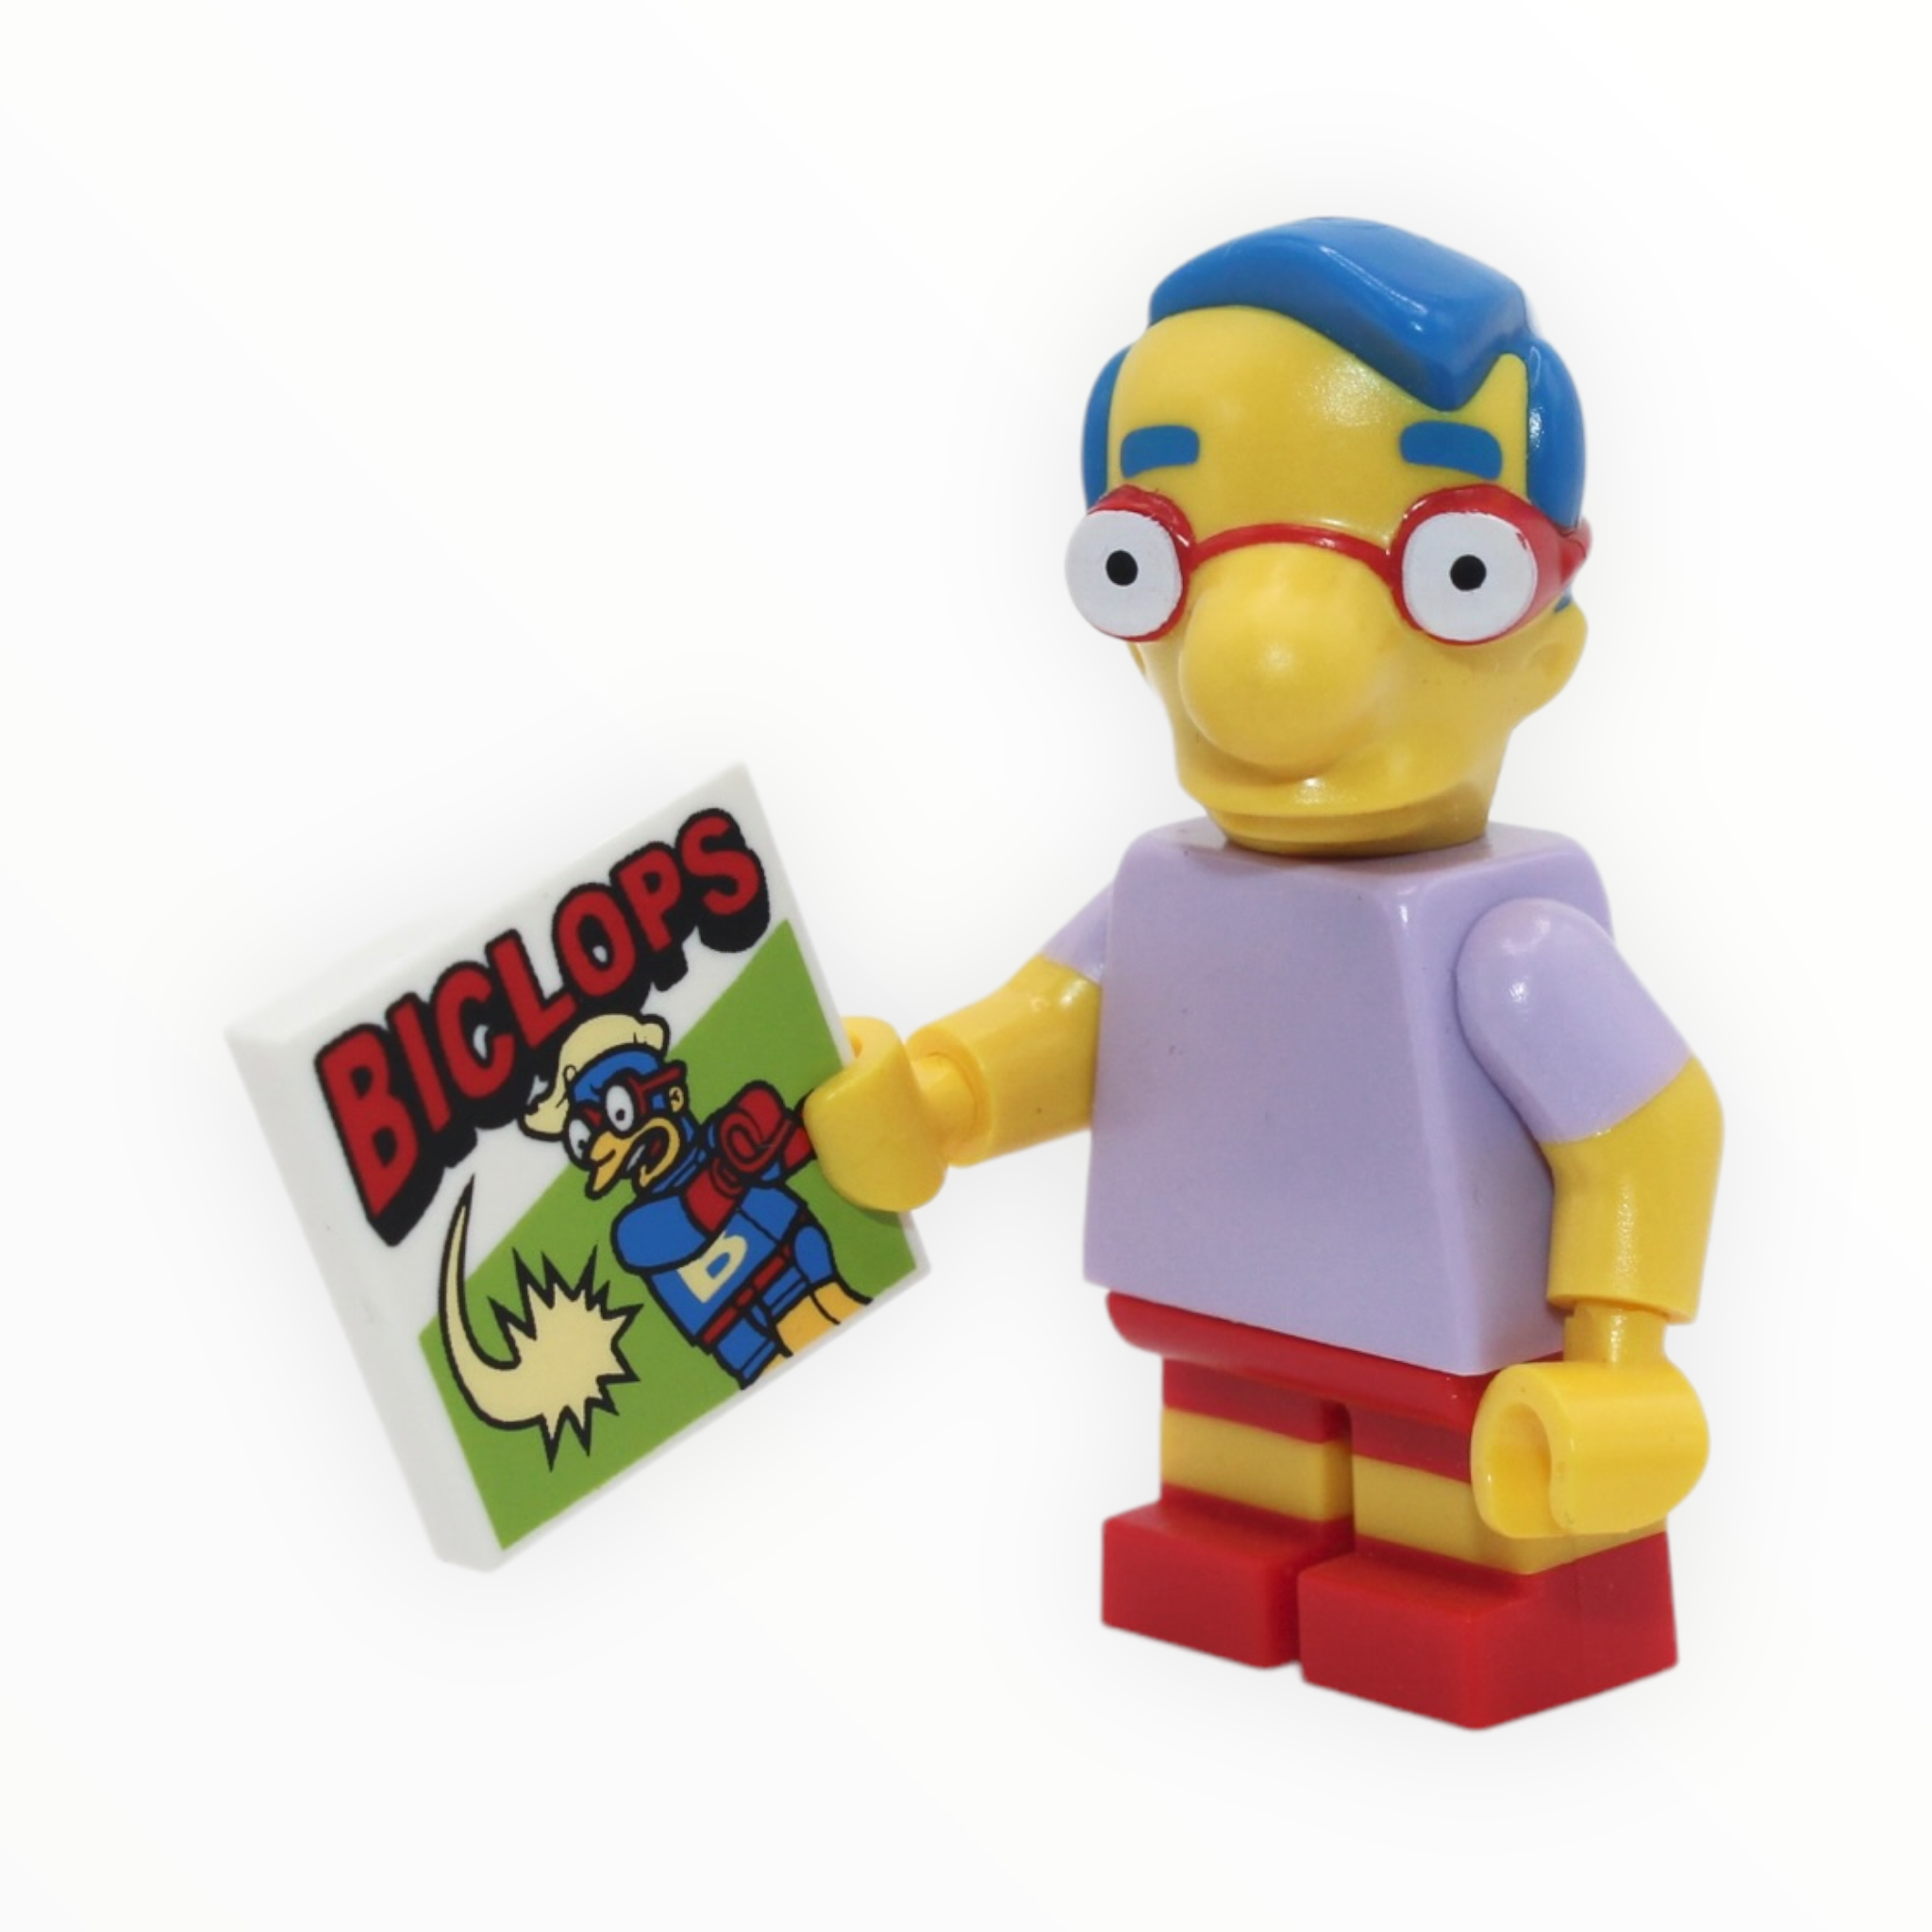 Simpsons Series: Milhouse Van Houten